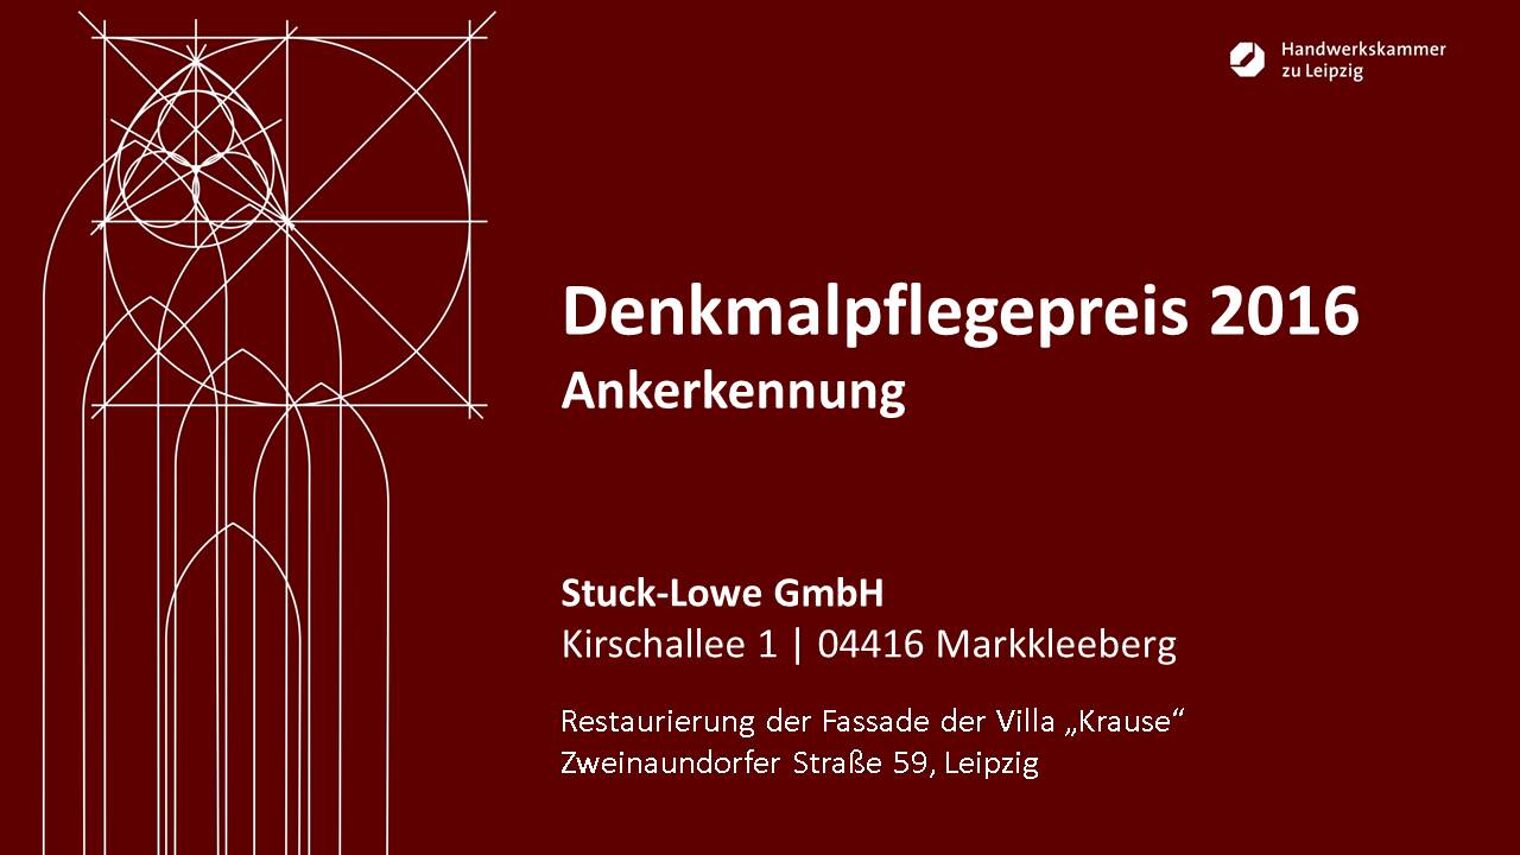 Stuck-Lowe GmbH: Restaurierung der Fassade der Villa "Krause" Zweinaundorfer Straße 59, Leipzig.